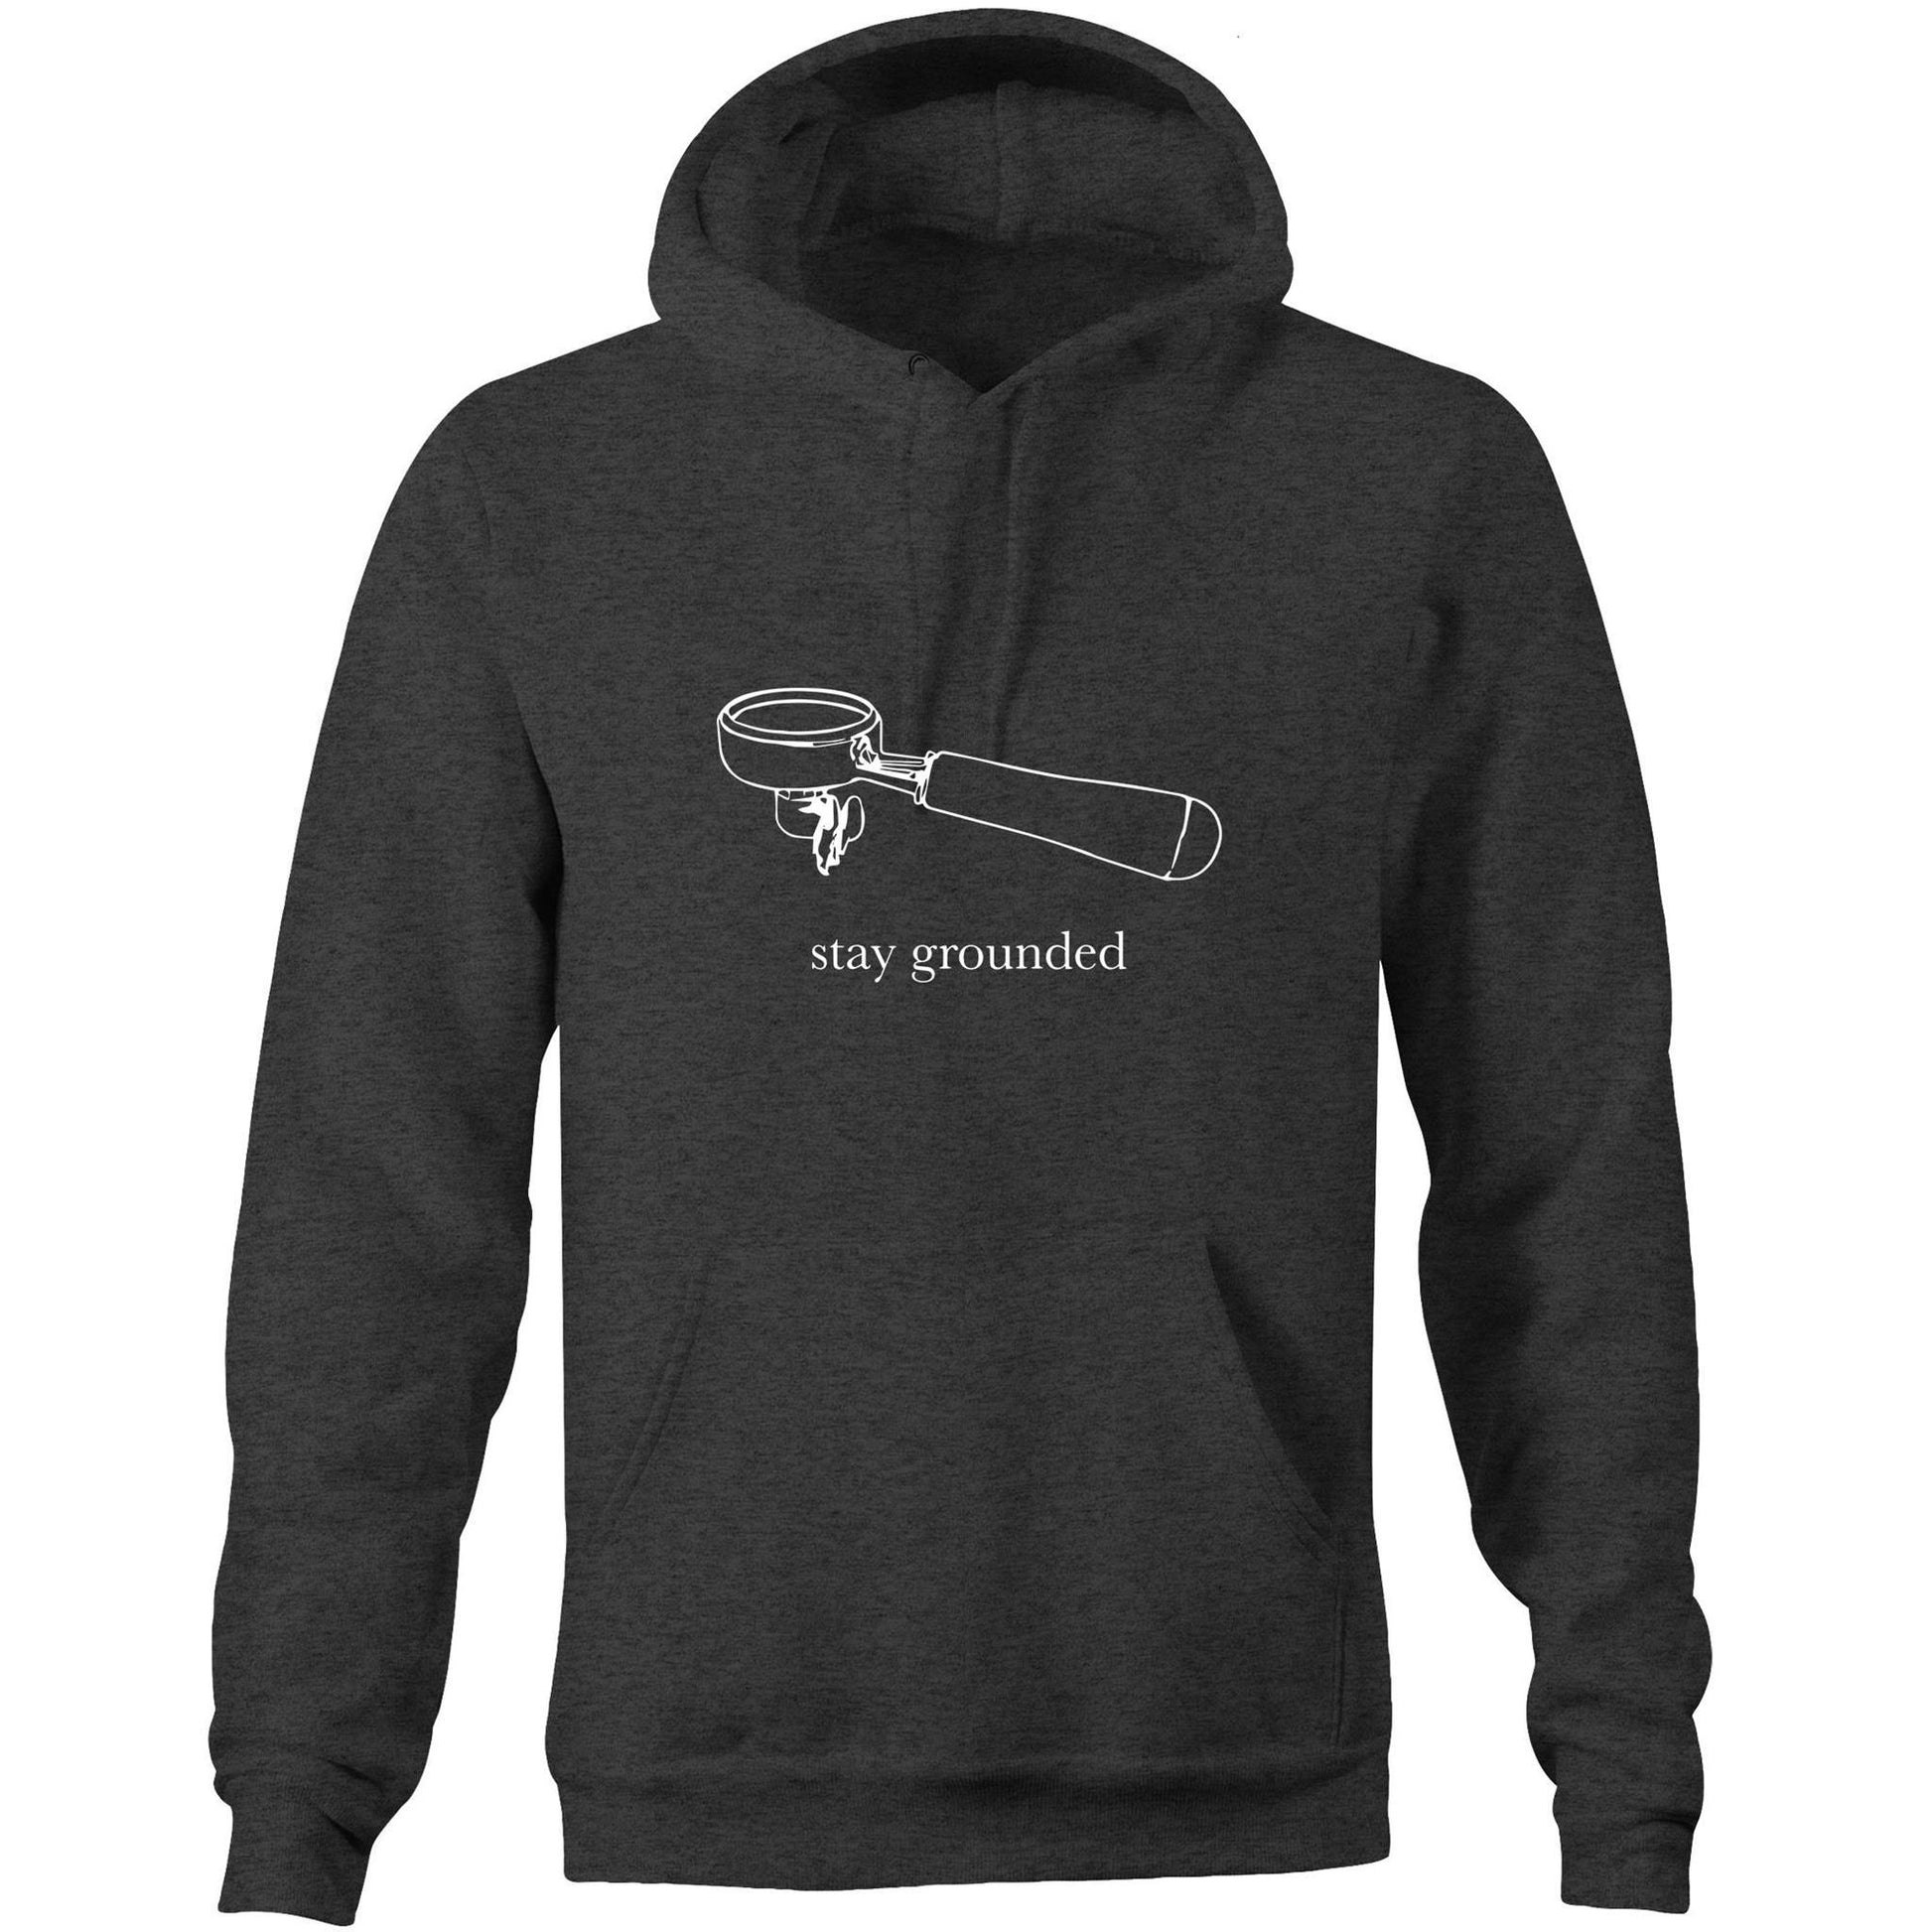 Stay Grounded - Pocket Hoodie Sweatshirt Asphalt Marle Hoodie Coffee Mens Womens